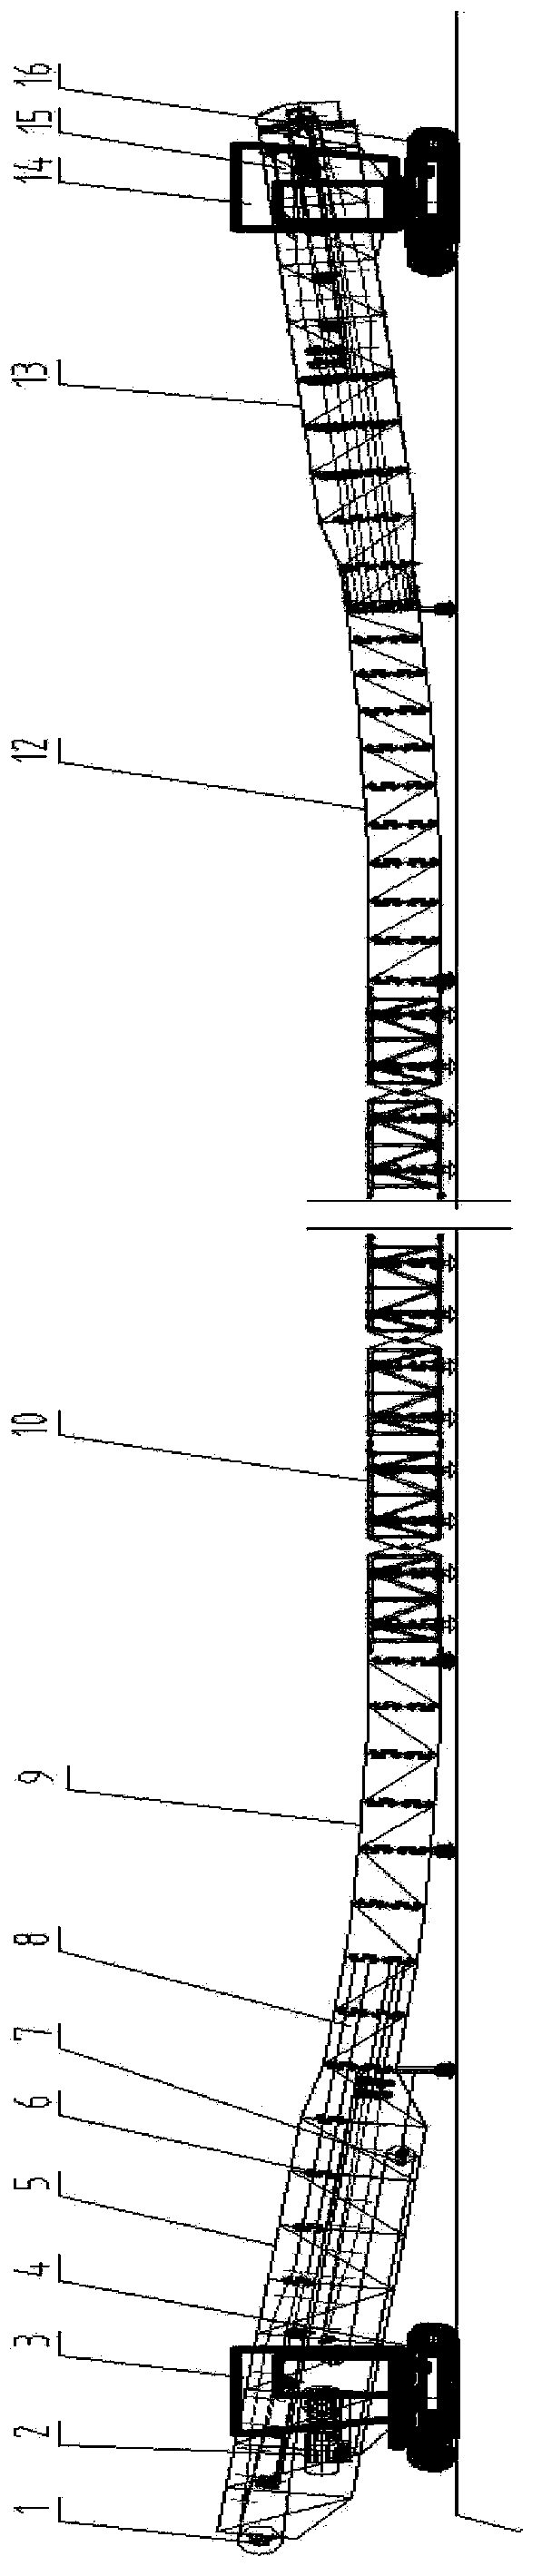 Movable type tubular belt conveyor